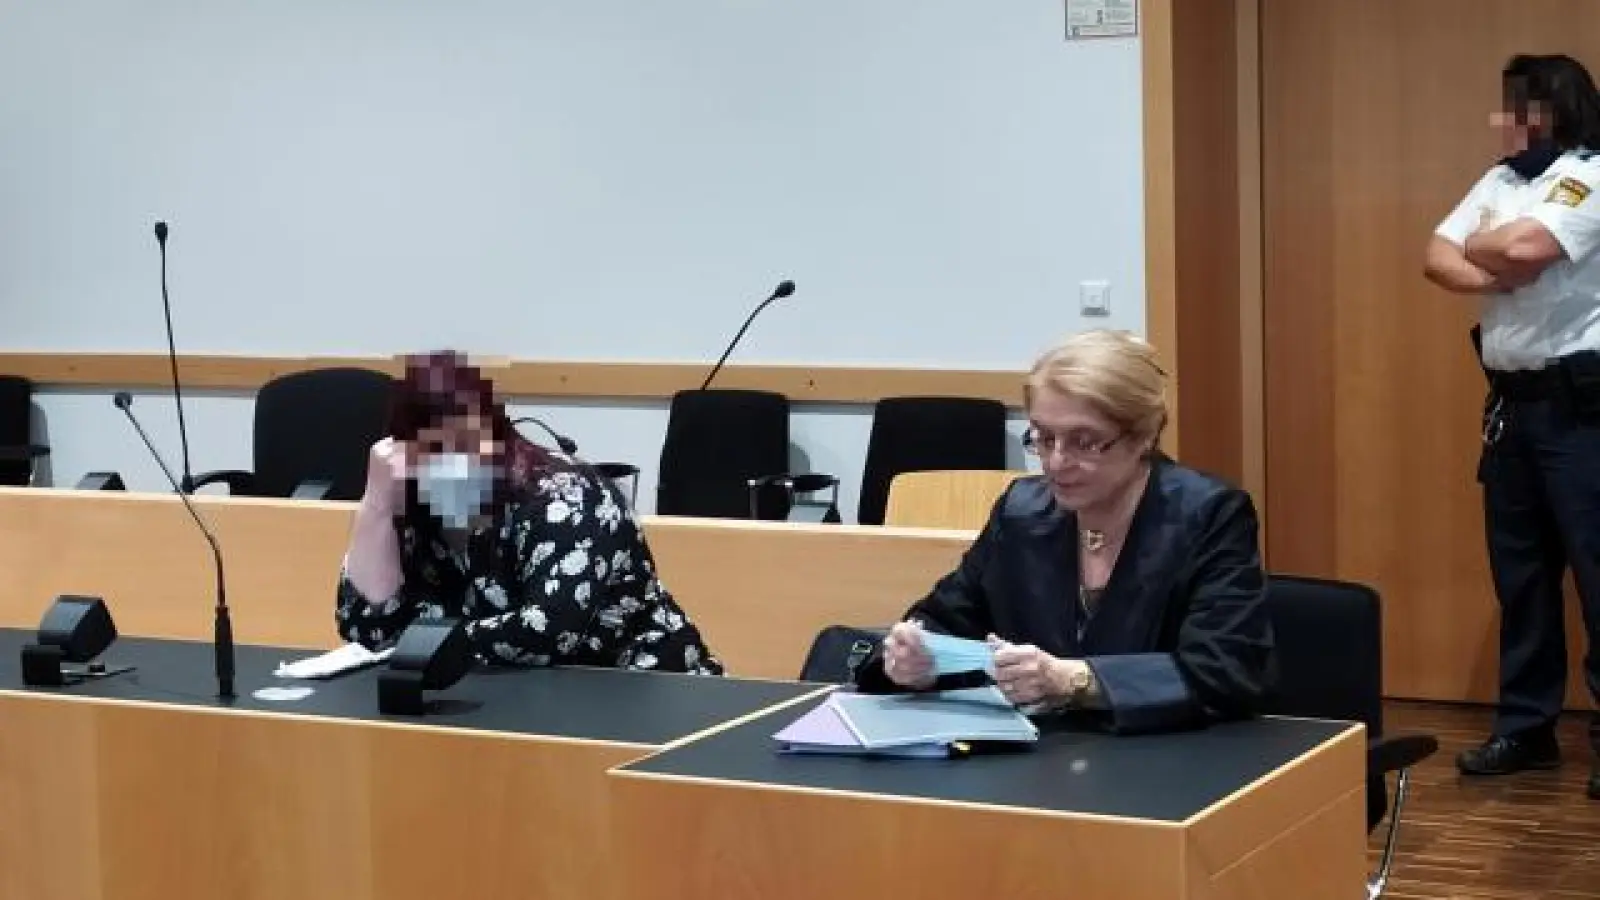 Eine 32-jährige Frau   aus Dillingen hat ihr Neugeborenes in einer Wiese ausgesetzt und steht nun wegen versuchten Totschlags vor Gericht, rechts Verteidigerin Cornelia McCready.		Foto: Patrick Bruckner (Foto: Patrick Bruckner)